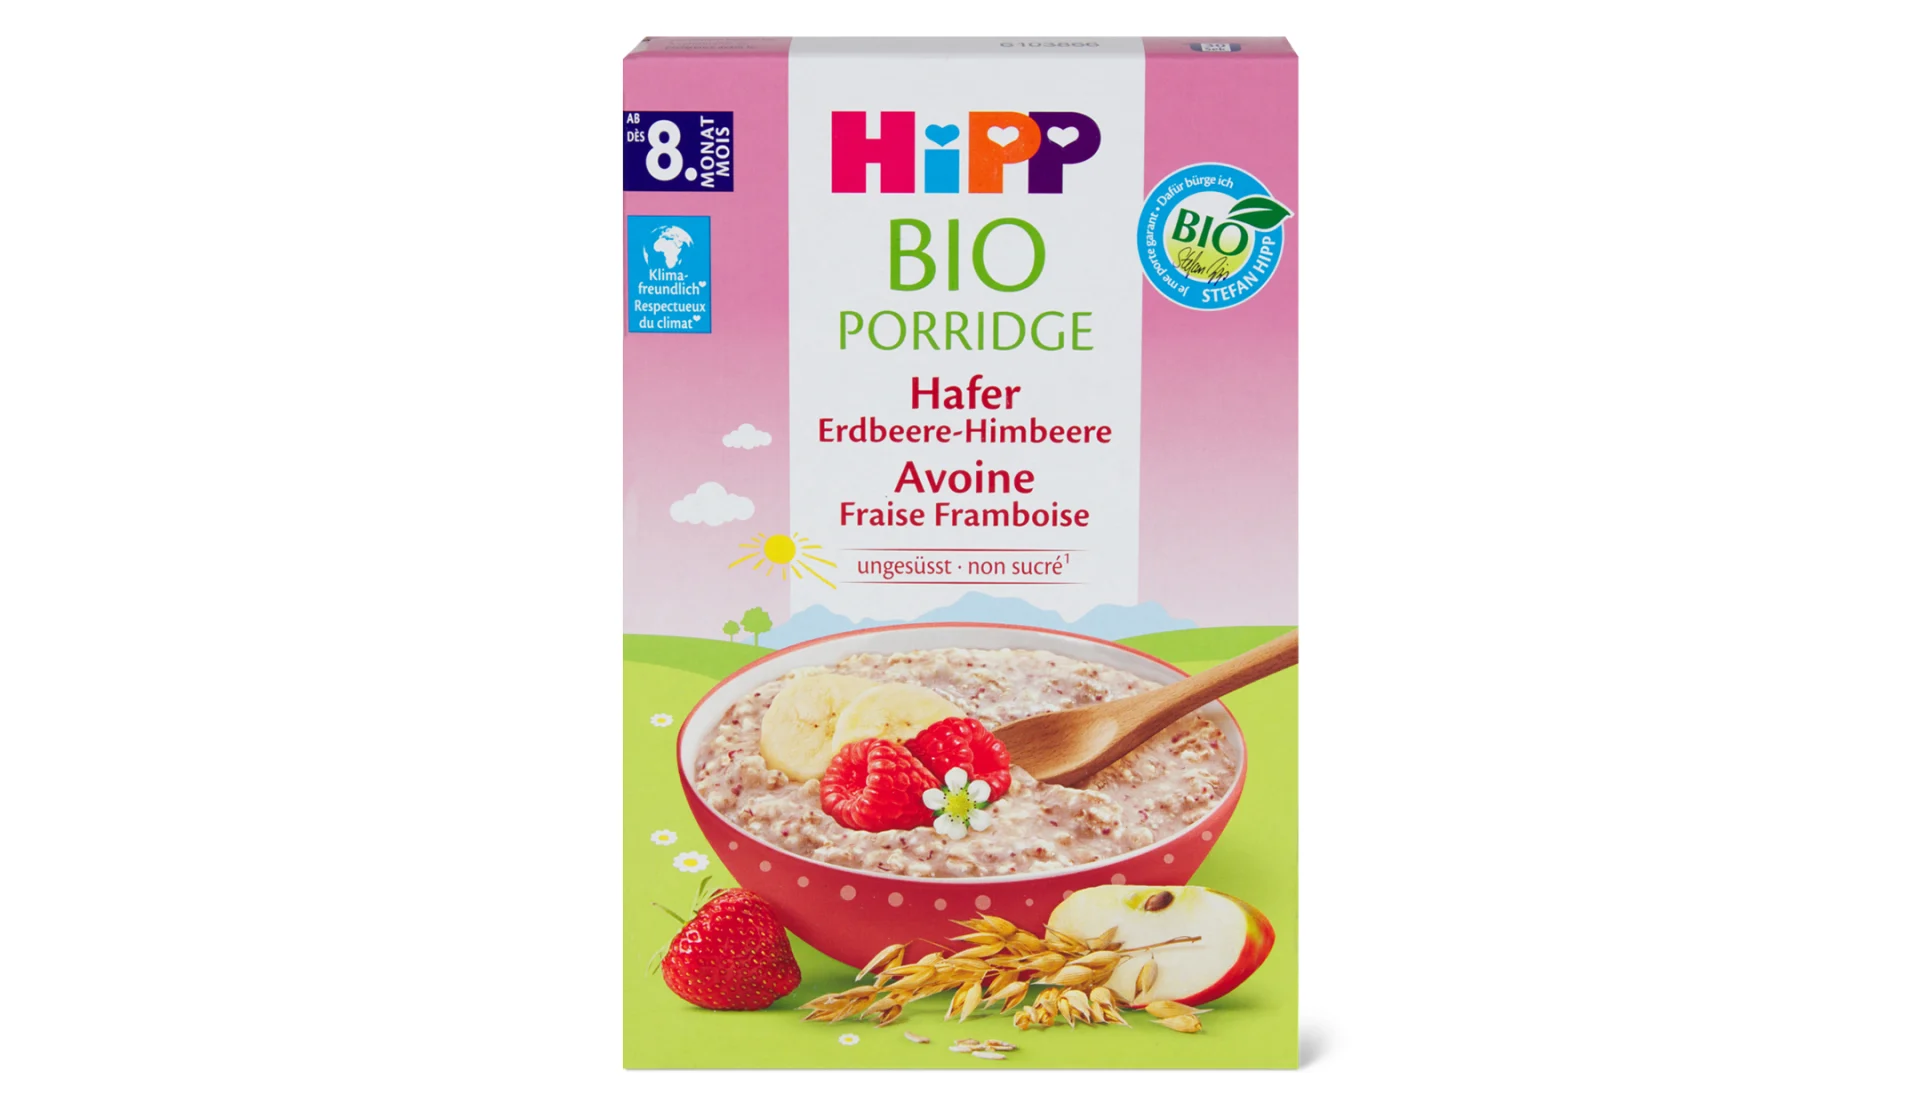 Hipp-Porridge16-9